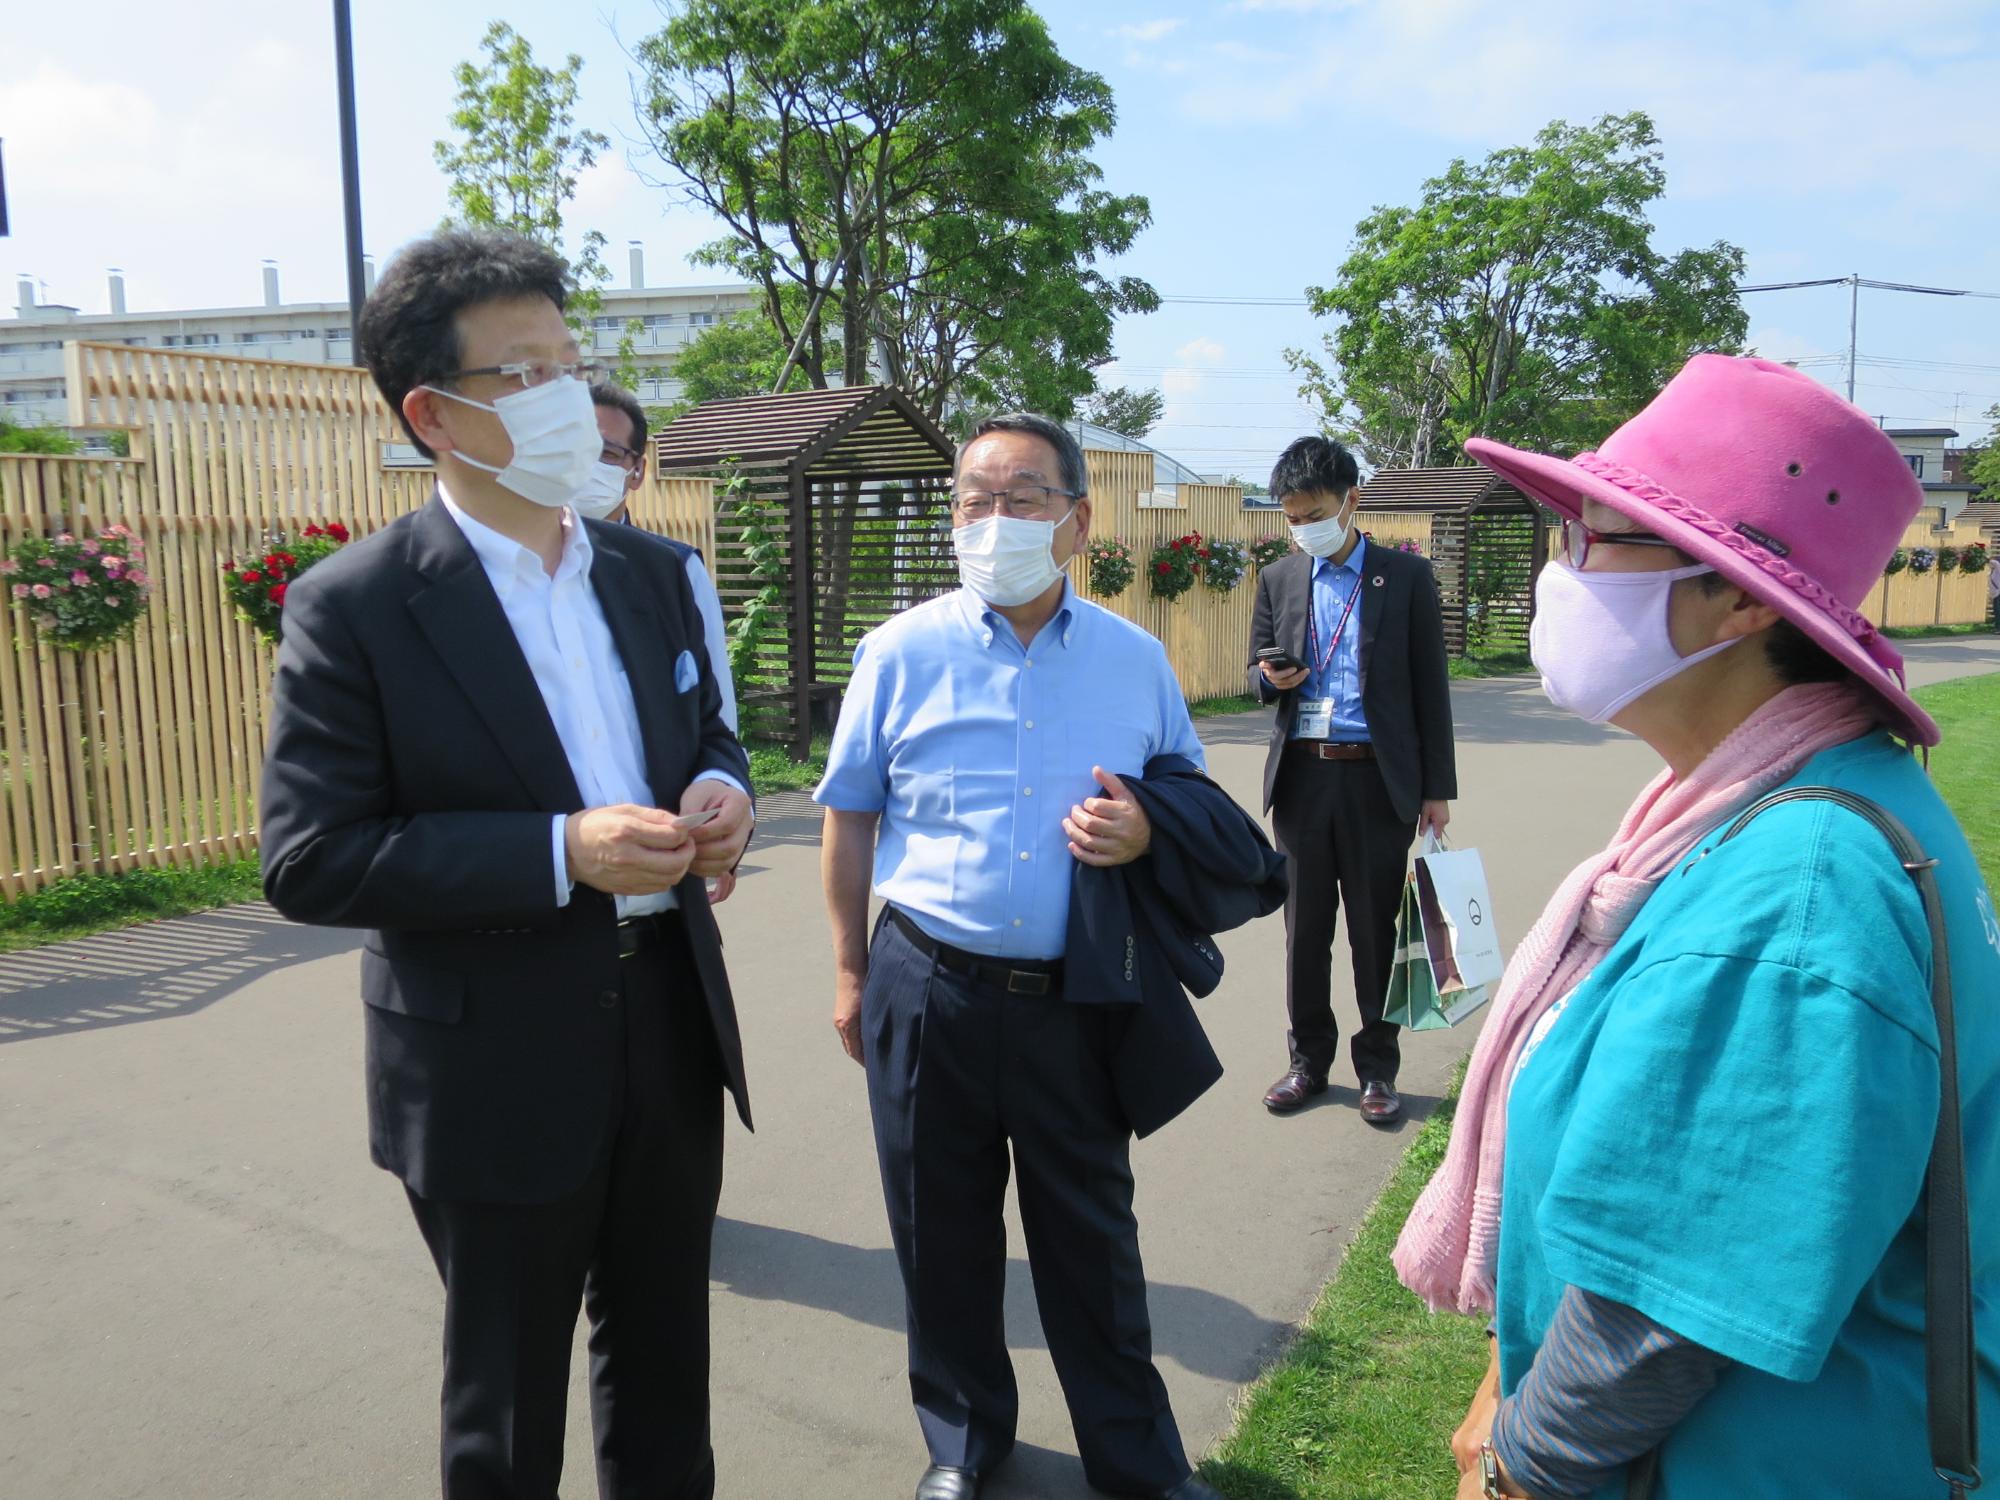 ボランティアと話をする熊本市長と原田市長